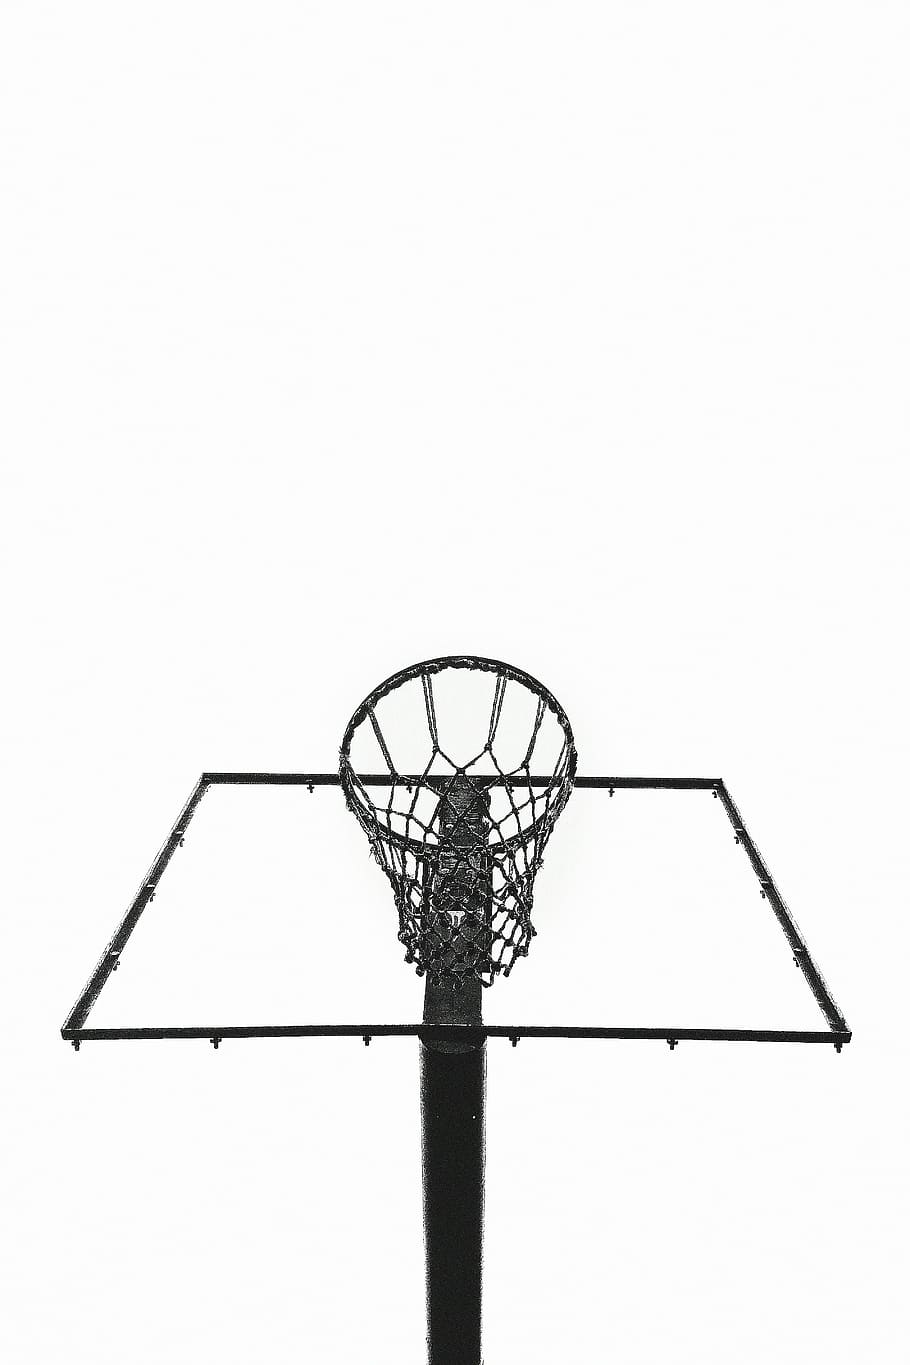 aro de basquete preto, preto, aço, emoldurado, basquete, aro, rede, aros, fitness, esportes